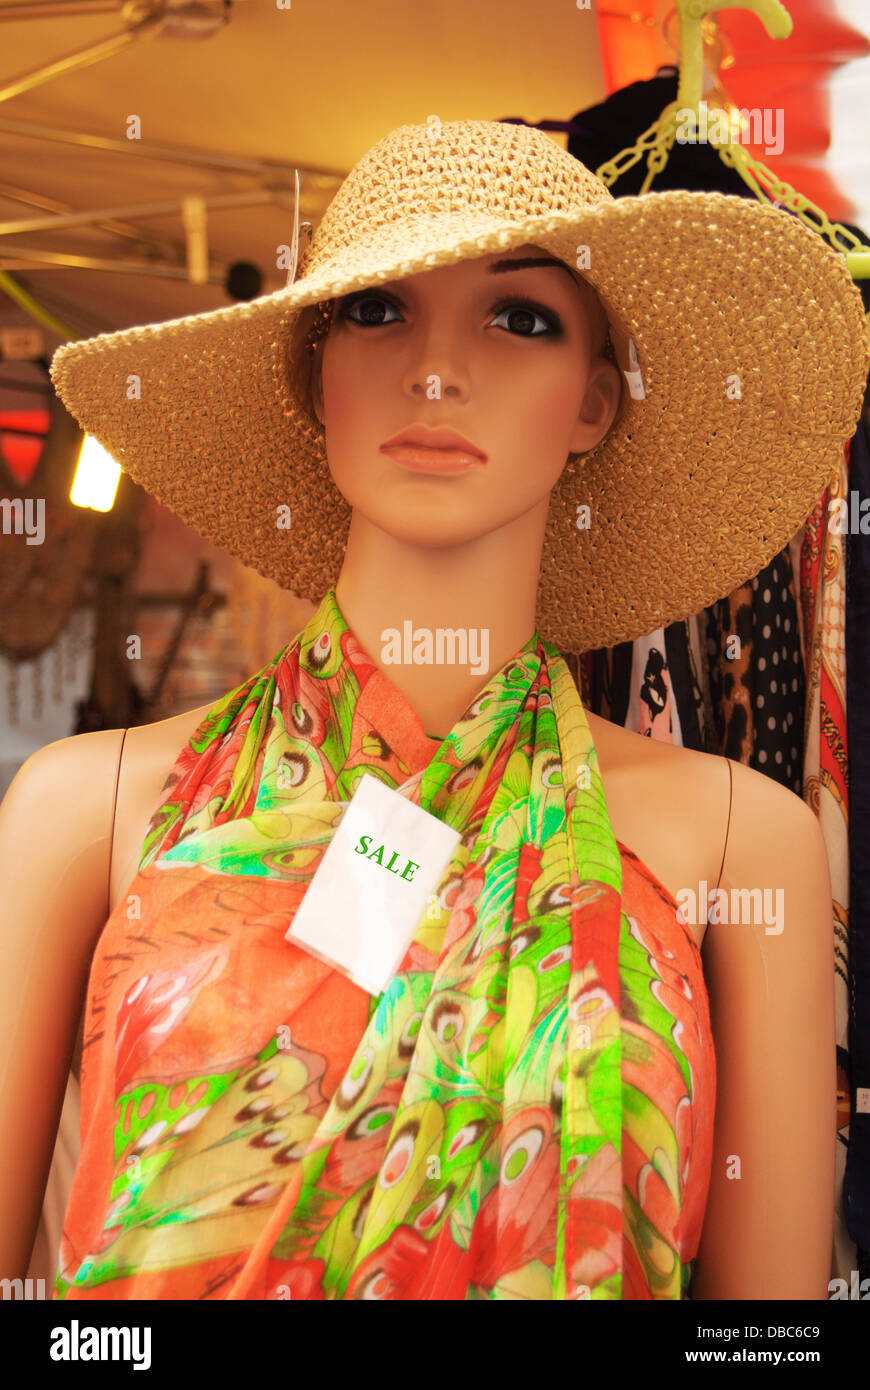 Manichino donna vestita in un colorato abiti estivi e un cappello di paglia  con un segno di vendita Foto stock - Alamy